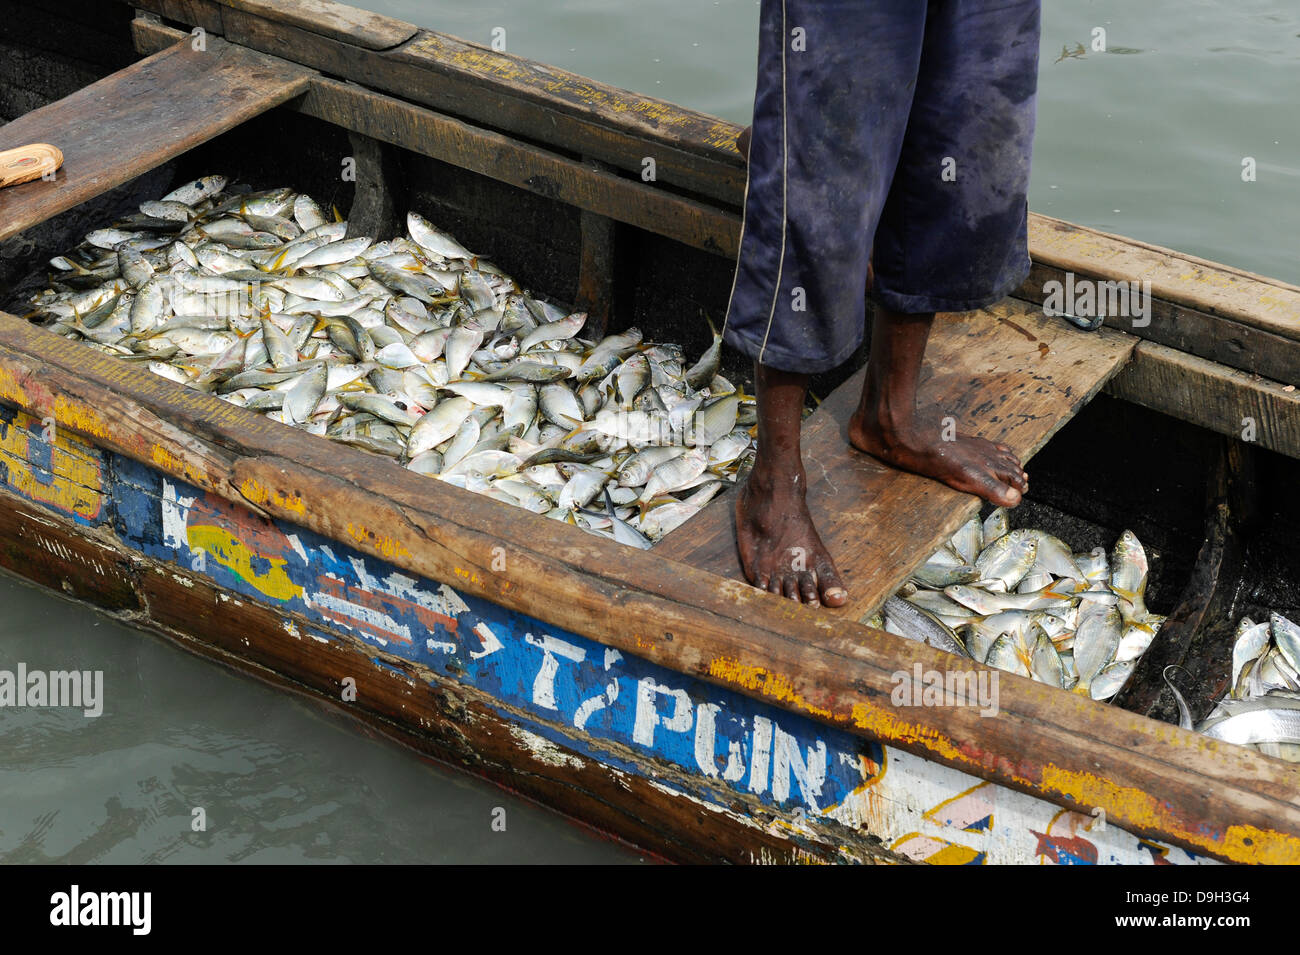 LA SIERRA LEONE, la Penisola Occidentale, il porto di pescatori di Tombo, la sicurezza alimentare e il sostentamento dei piccoli pescatori costieri sono colpiti dalla grande flotta di pescherecci da traino Foto Stock